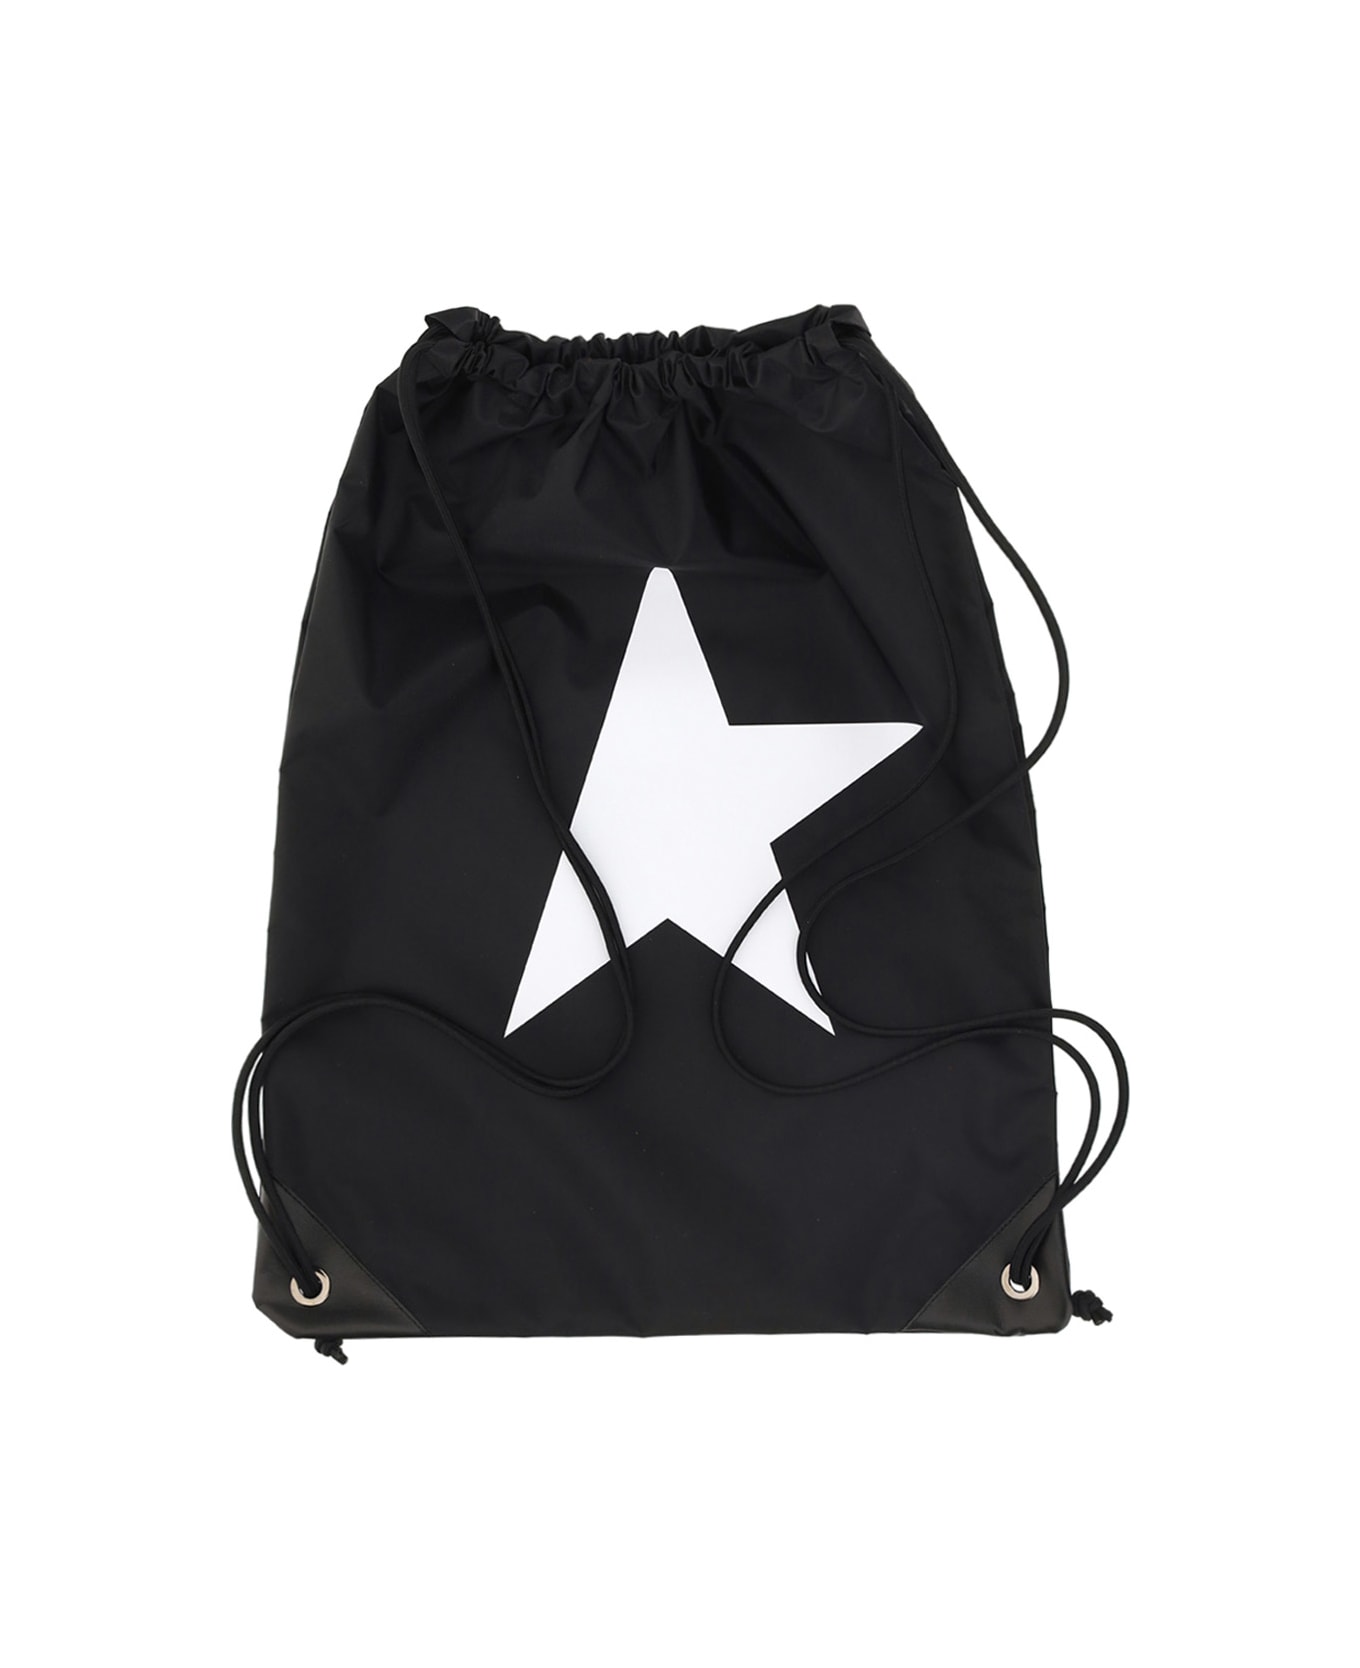 Golden Goose Star Drawstring Bag - Black/White